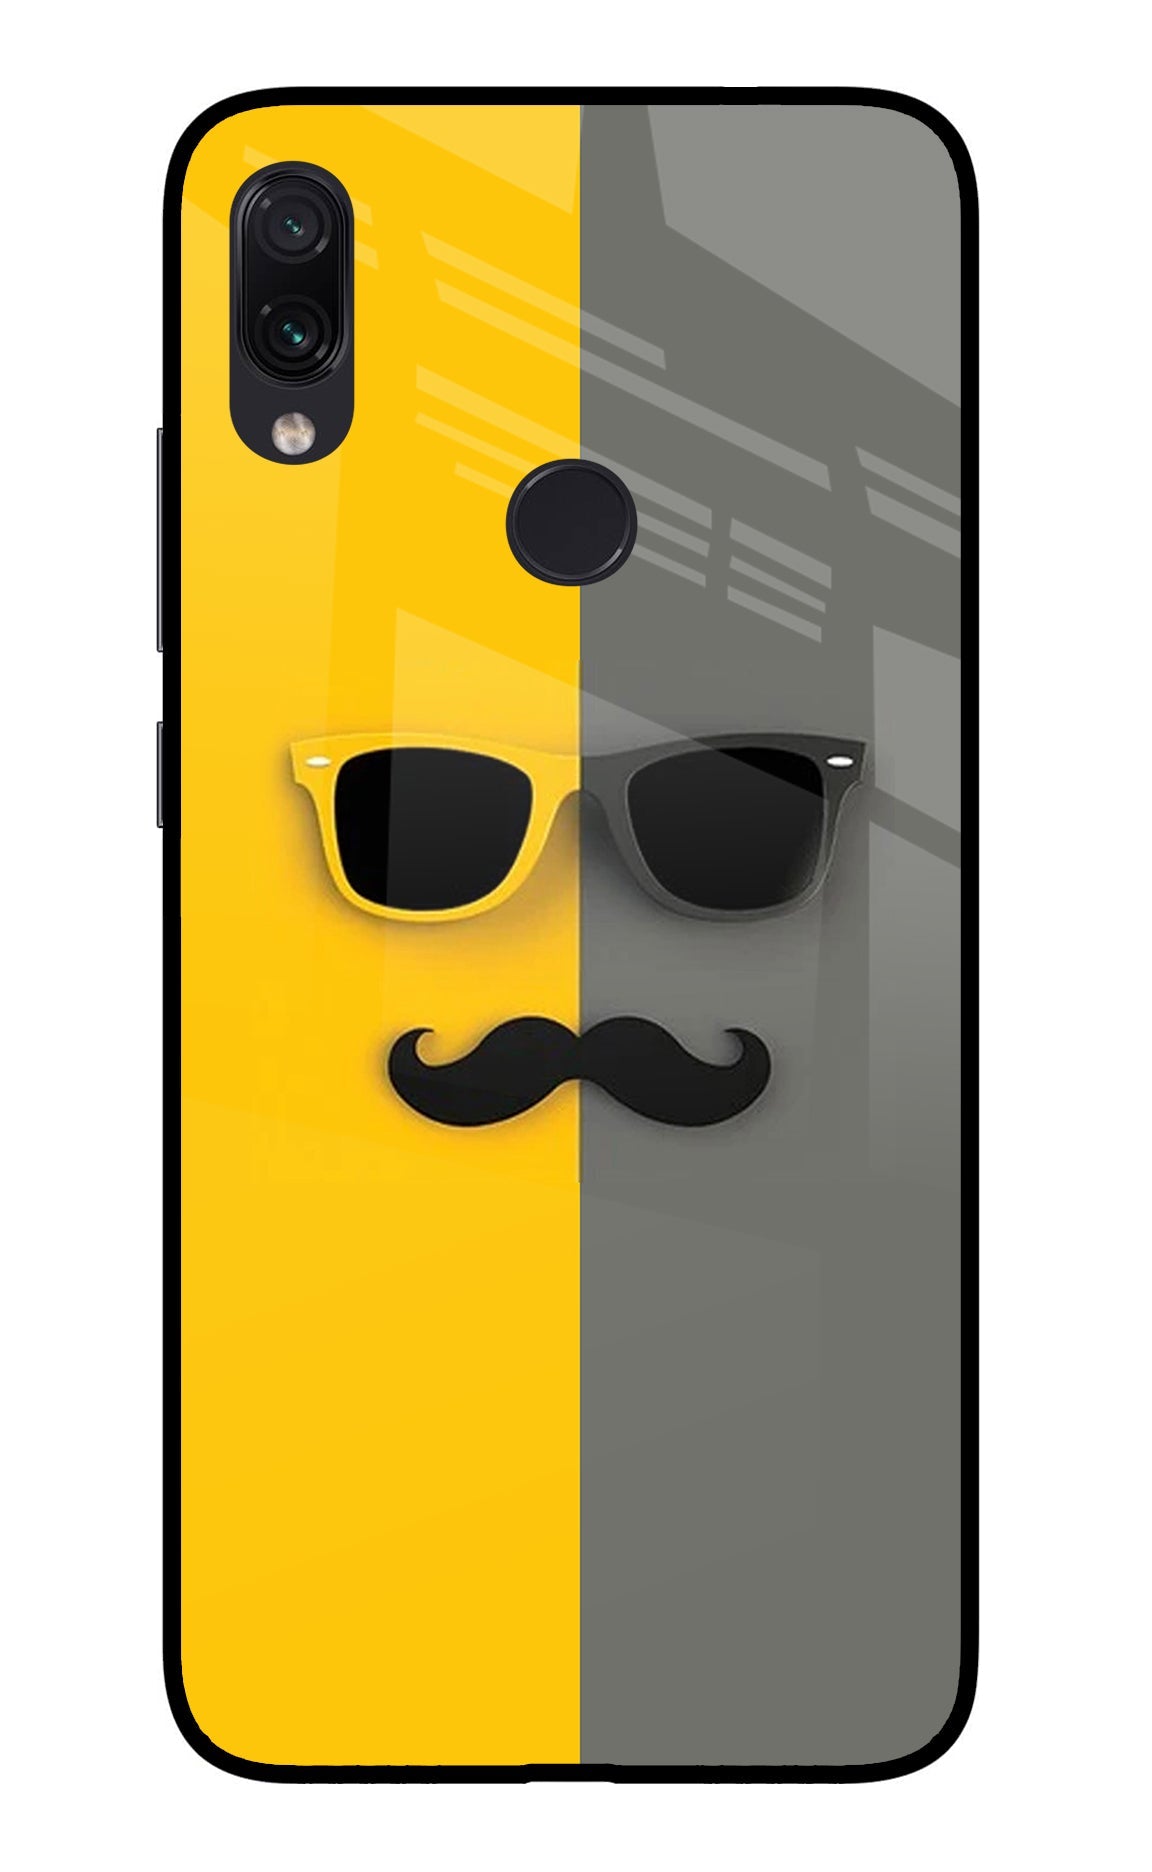 Sunglasses with Mustache Redmi Note 7/7S/7 Pro Glass Case